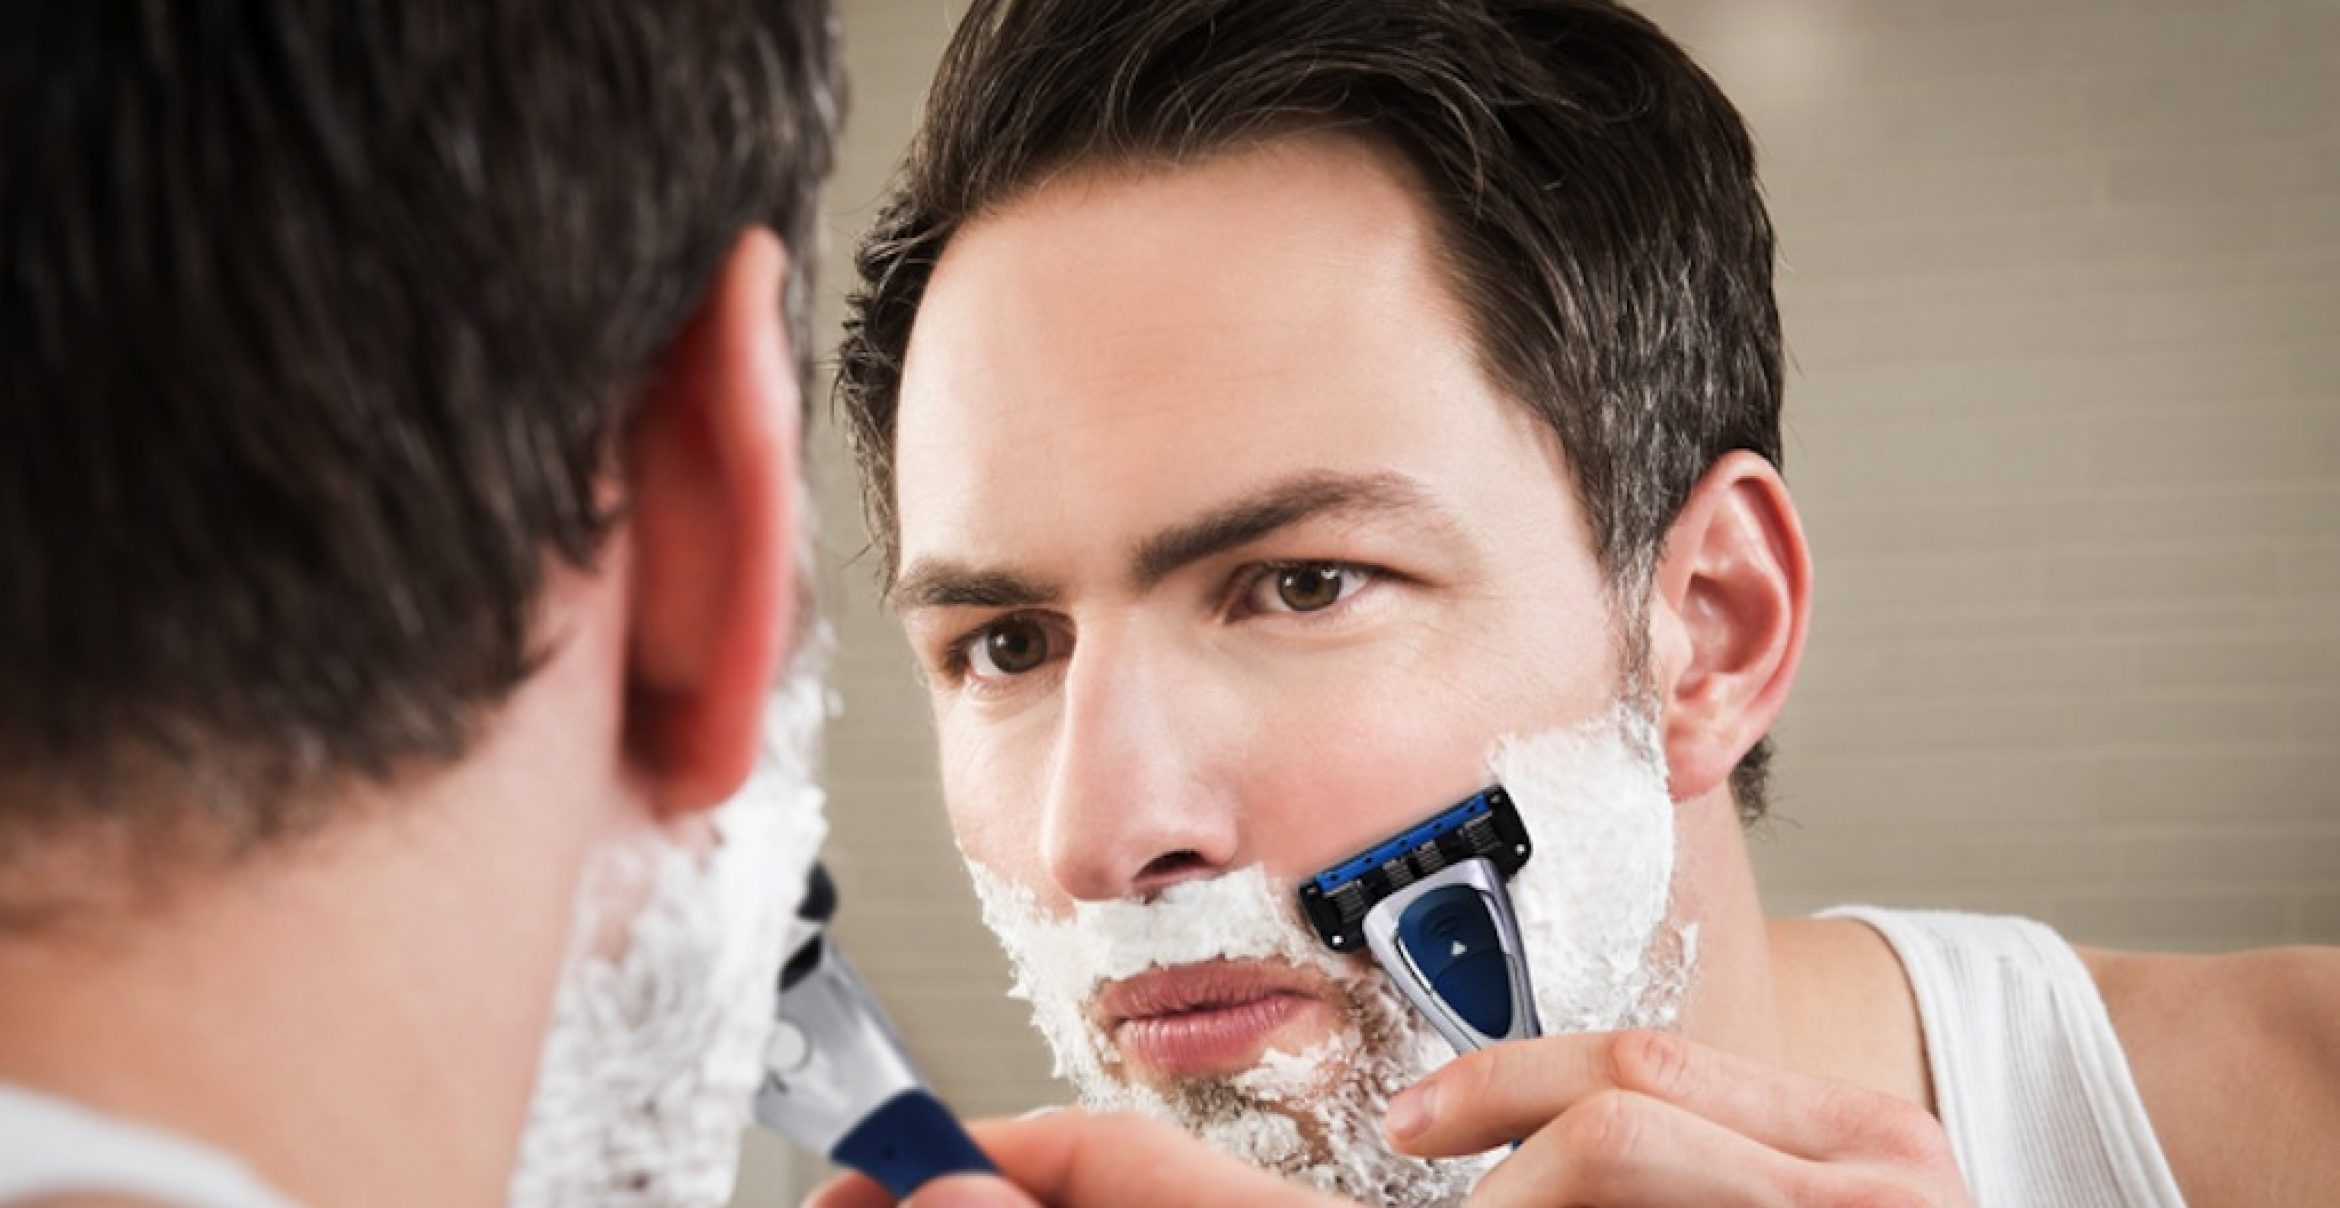 Ready to shave? Jahresvorrat an Rasierklingen zu gewinnen